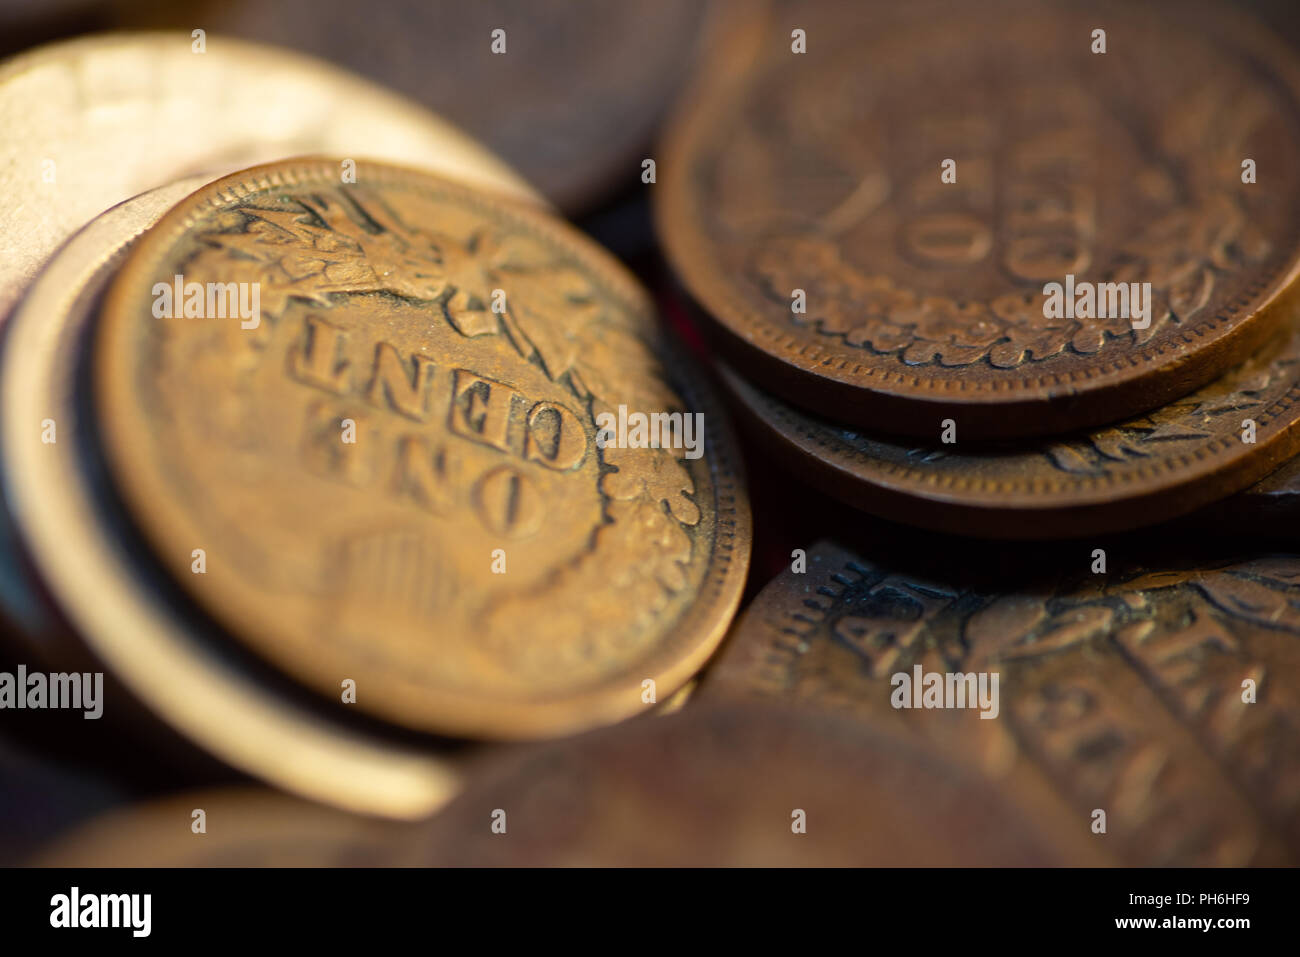 Las monedas de un centavo a partir de finales de 1800. Foto de stock